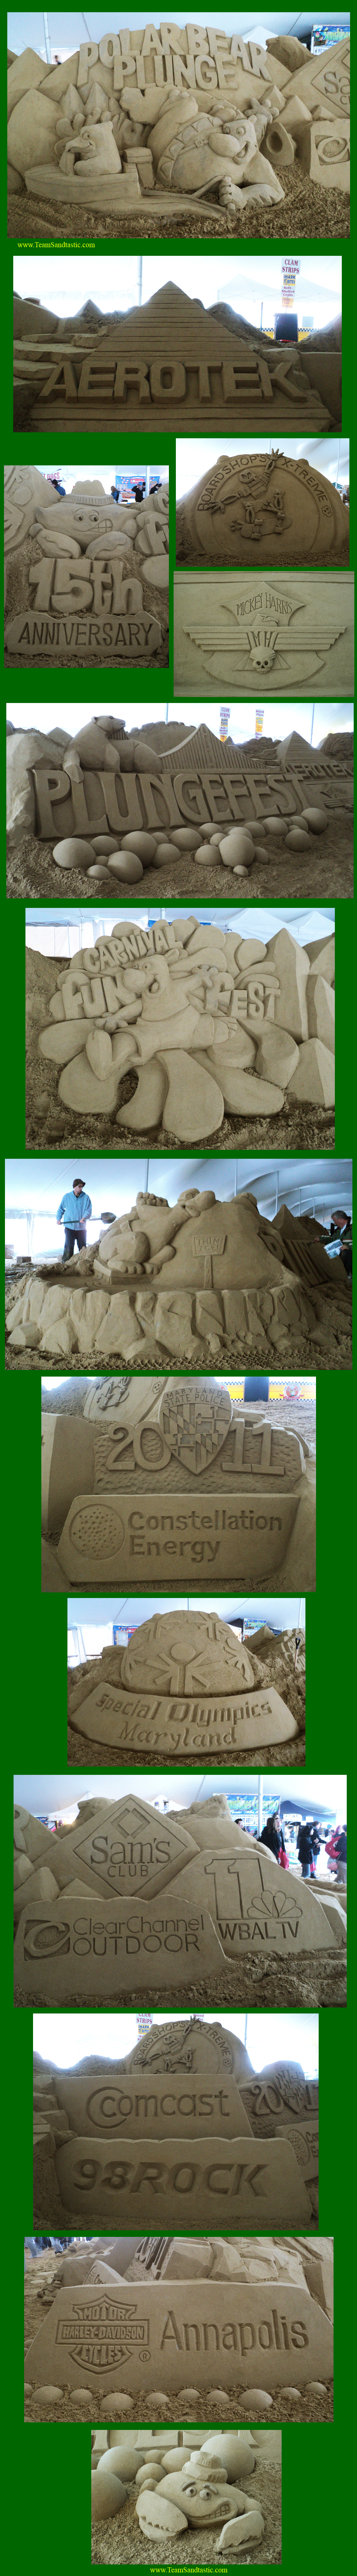 Polar Plunge Sand Sculptures